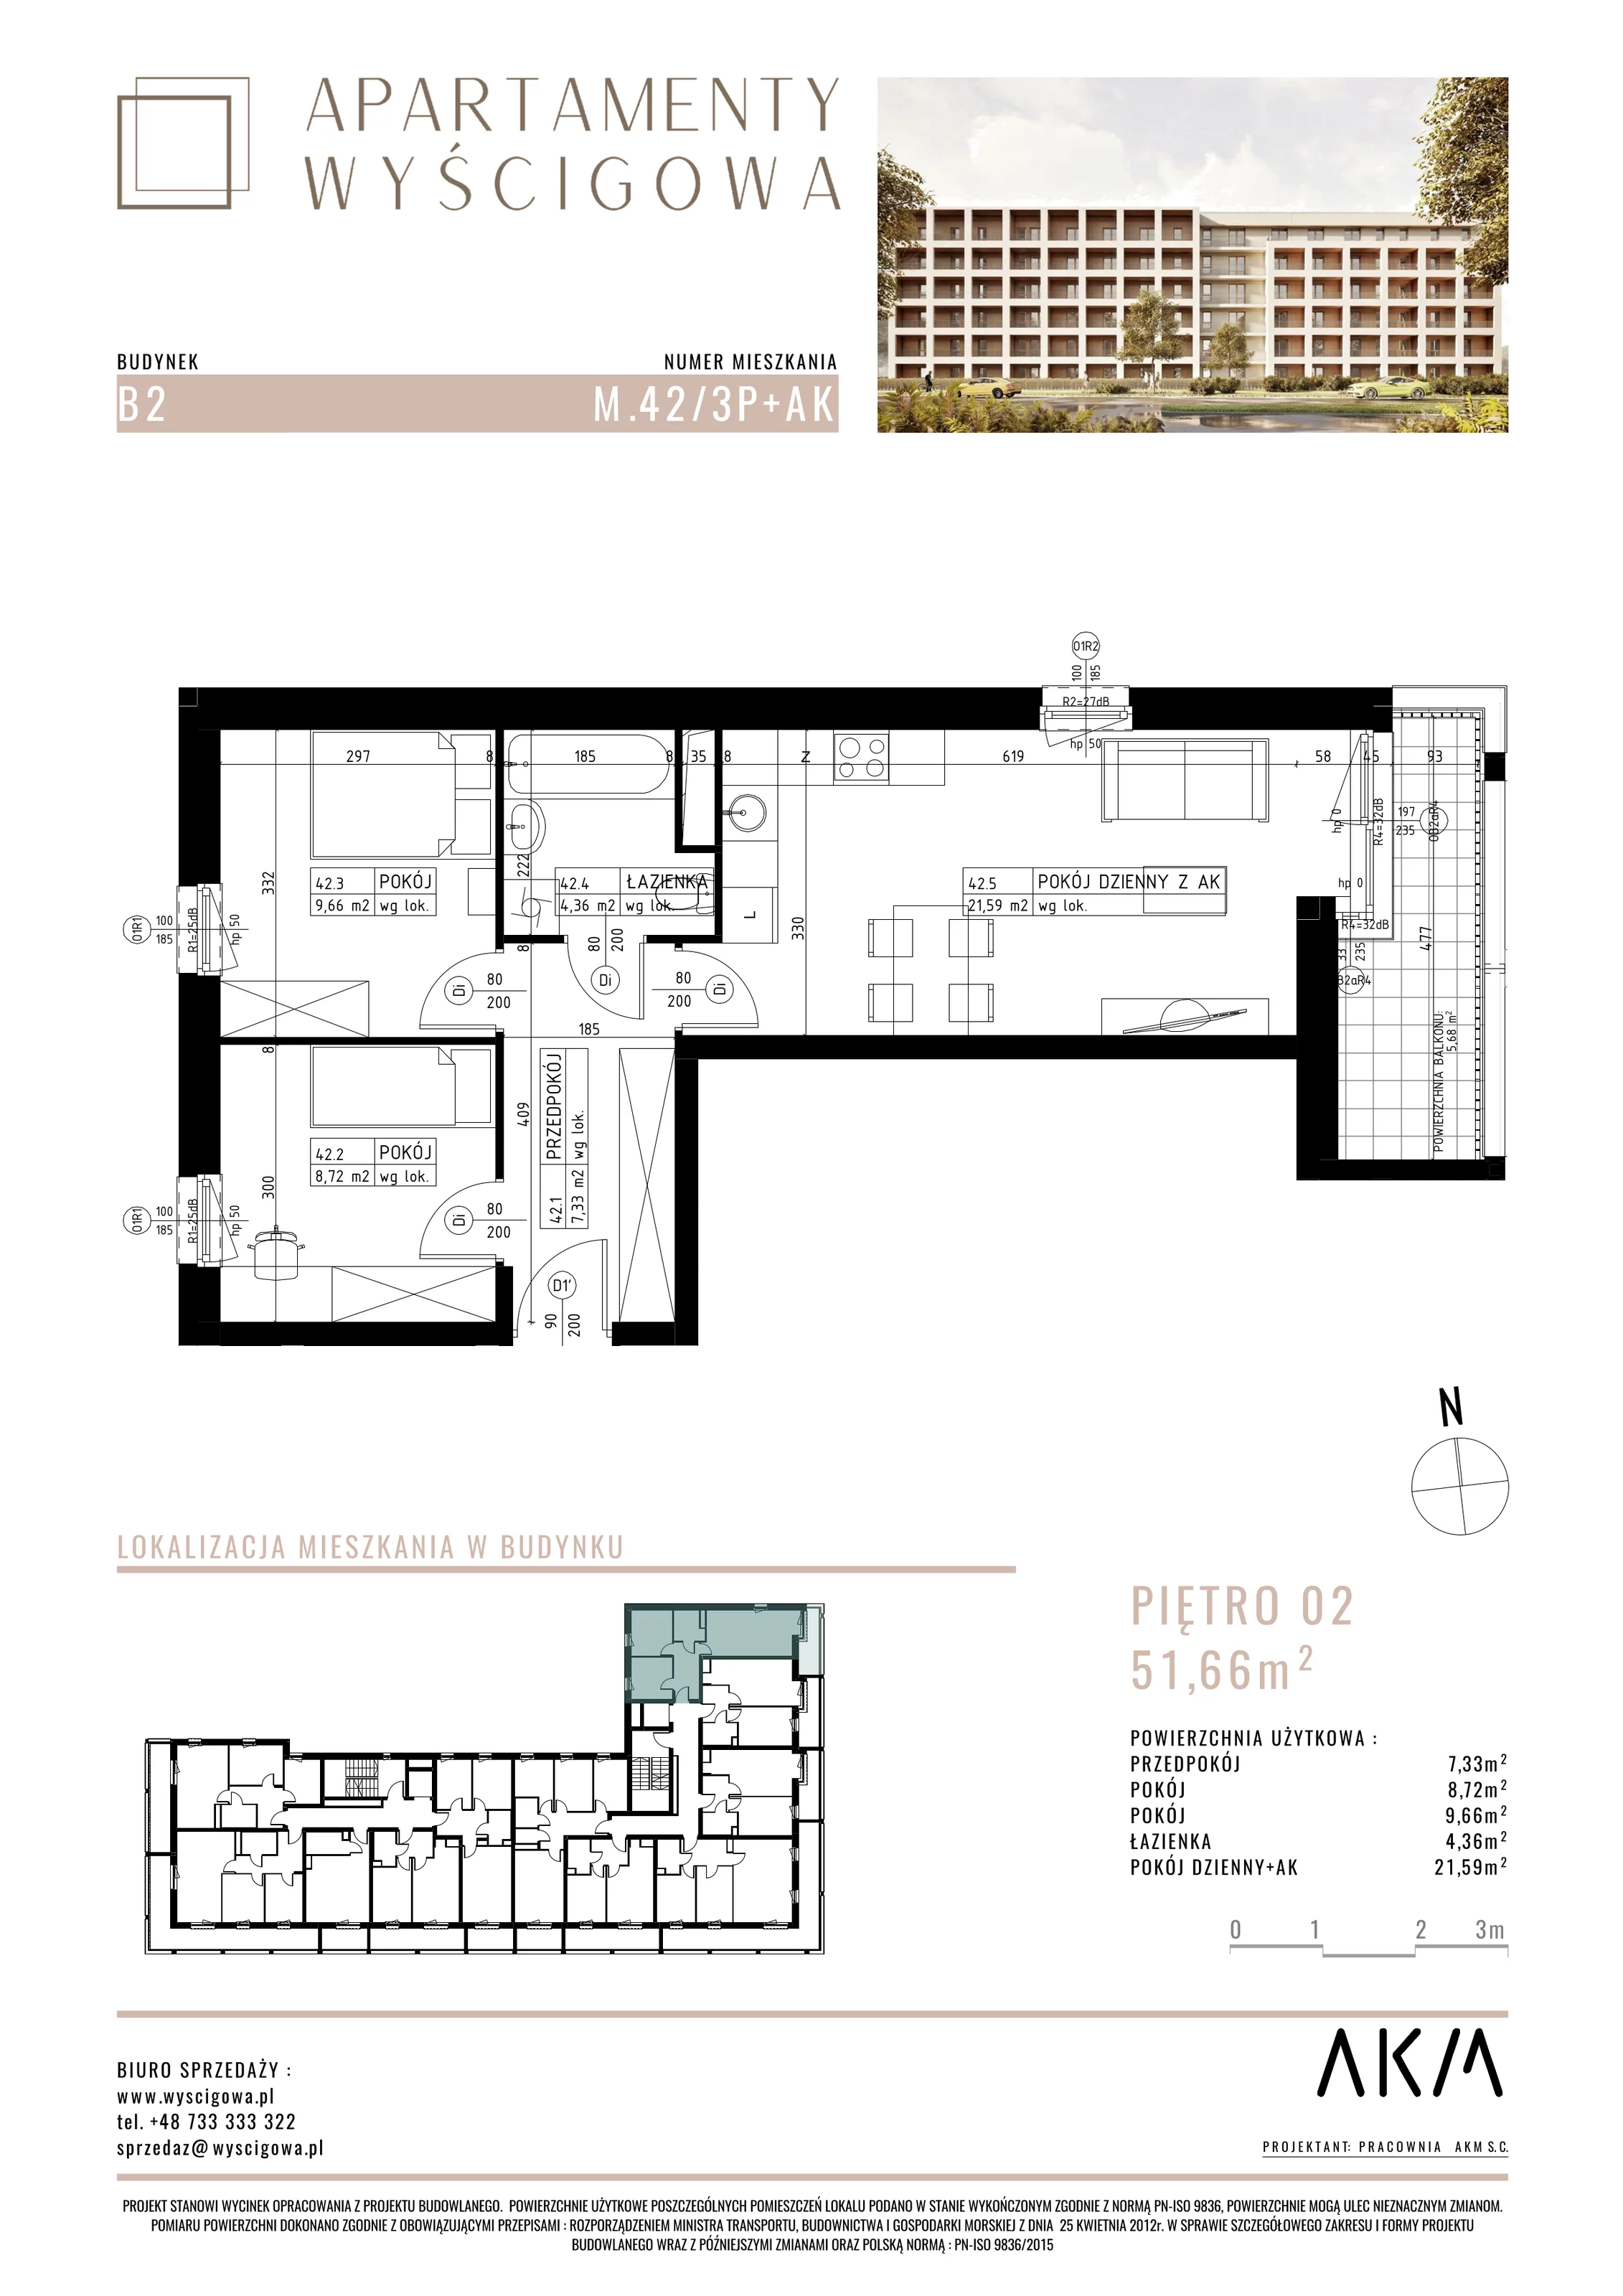 Mieszkanie 51,66 m², piętro 2, oferta nr B2.M42, Apartamenty Wyścigowa, Lublin, Dziesiąta, Dziesiąta, ul. Wyścigowa